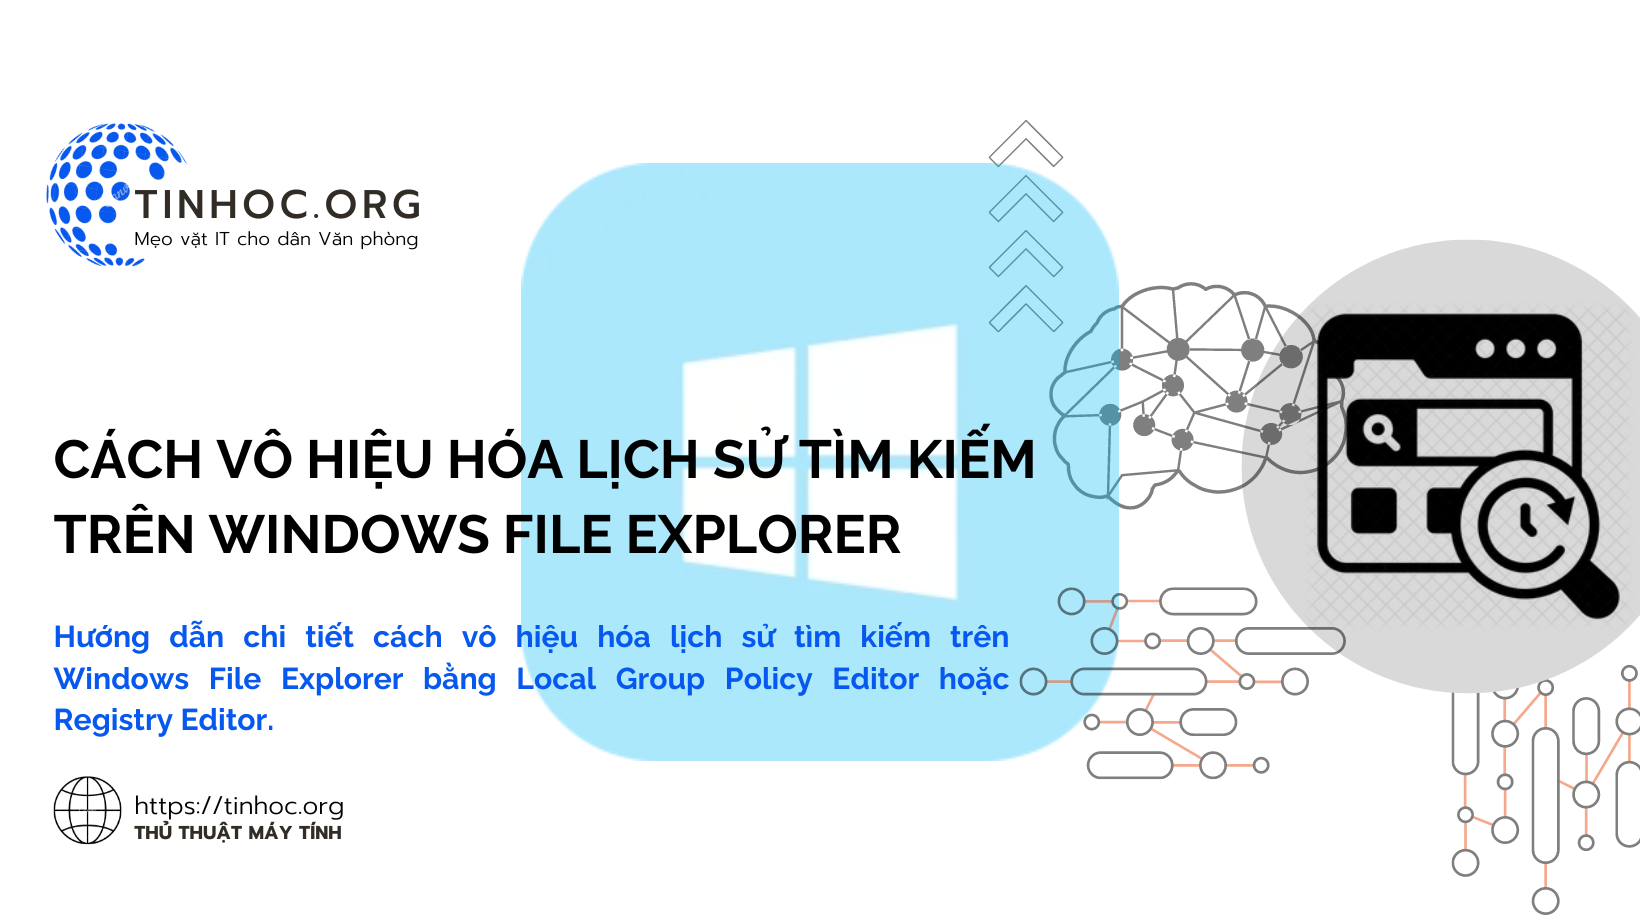 Hướng dẫn chi tiết cách vô hiệu hóa lịch sử tìm kiếm trên Windows File Explorer bằng Local Group Policy Editor hoặc Registry Editor.